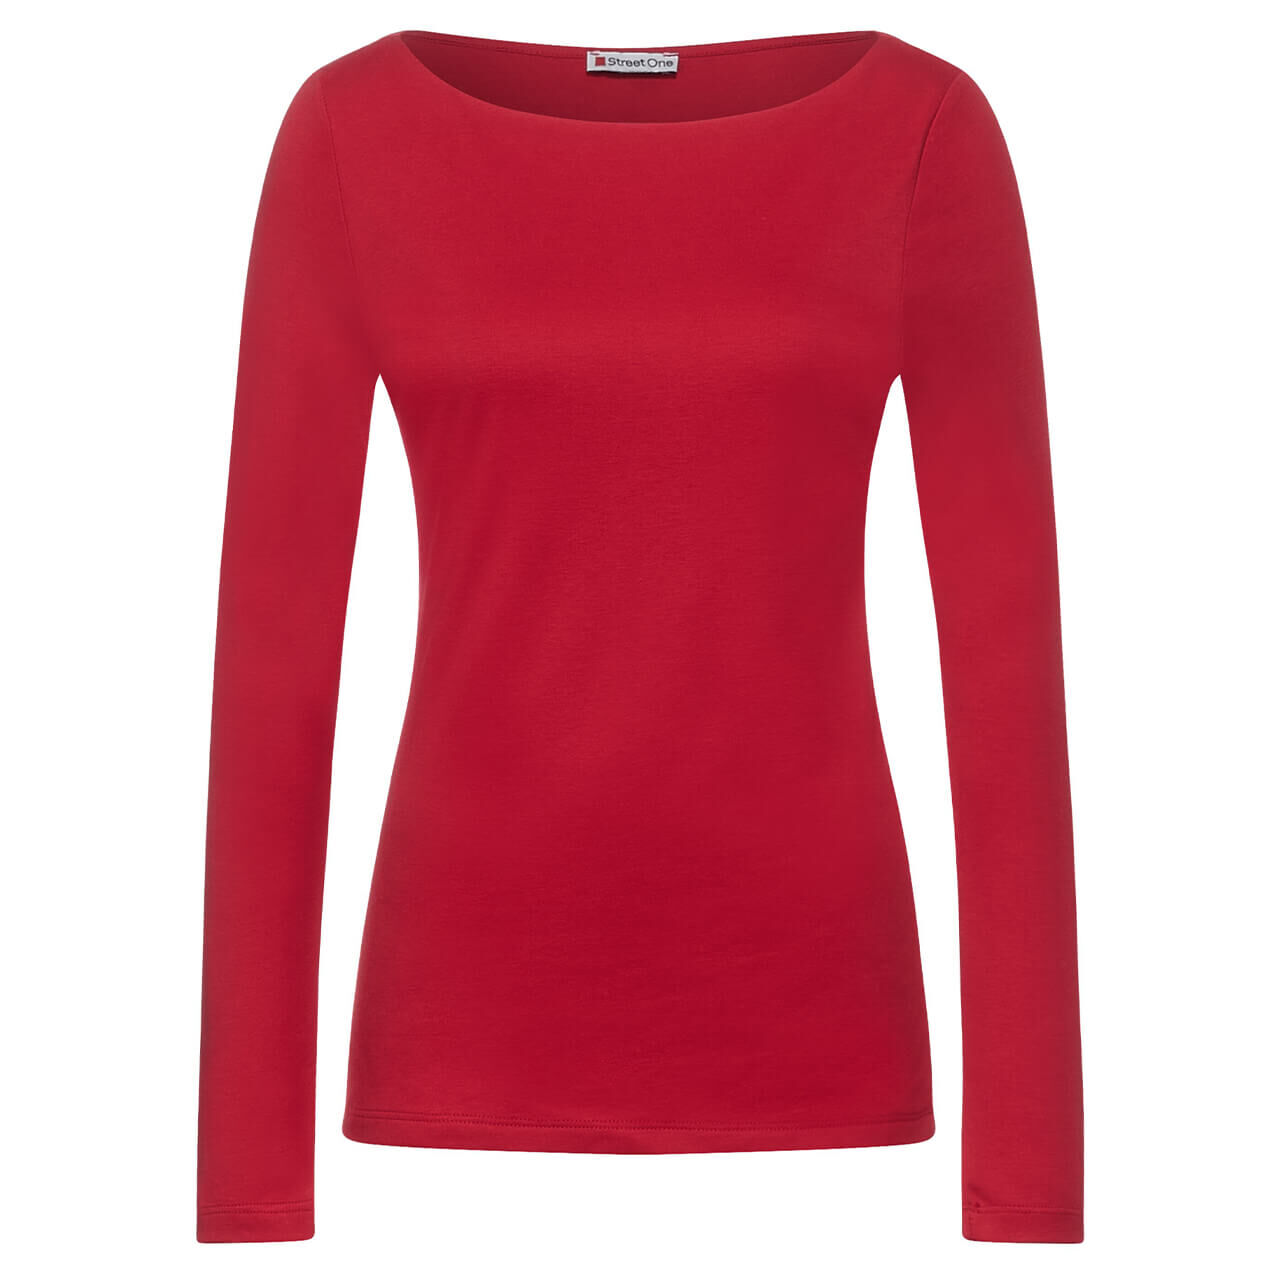 Street One Lanea Langarm Shirt für Damen in Rot, FarbNr.: 13319